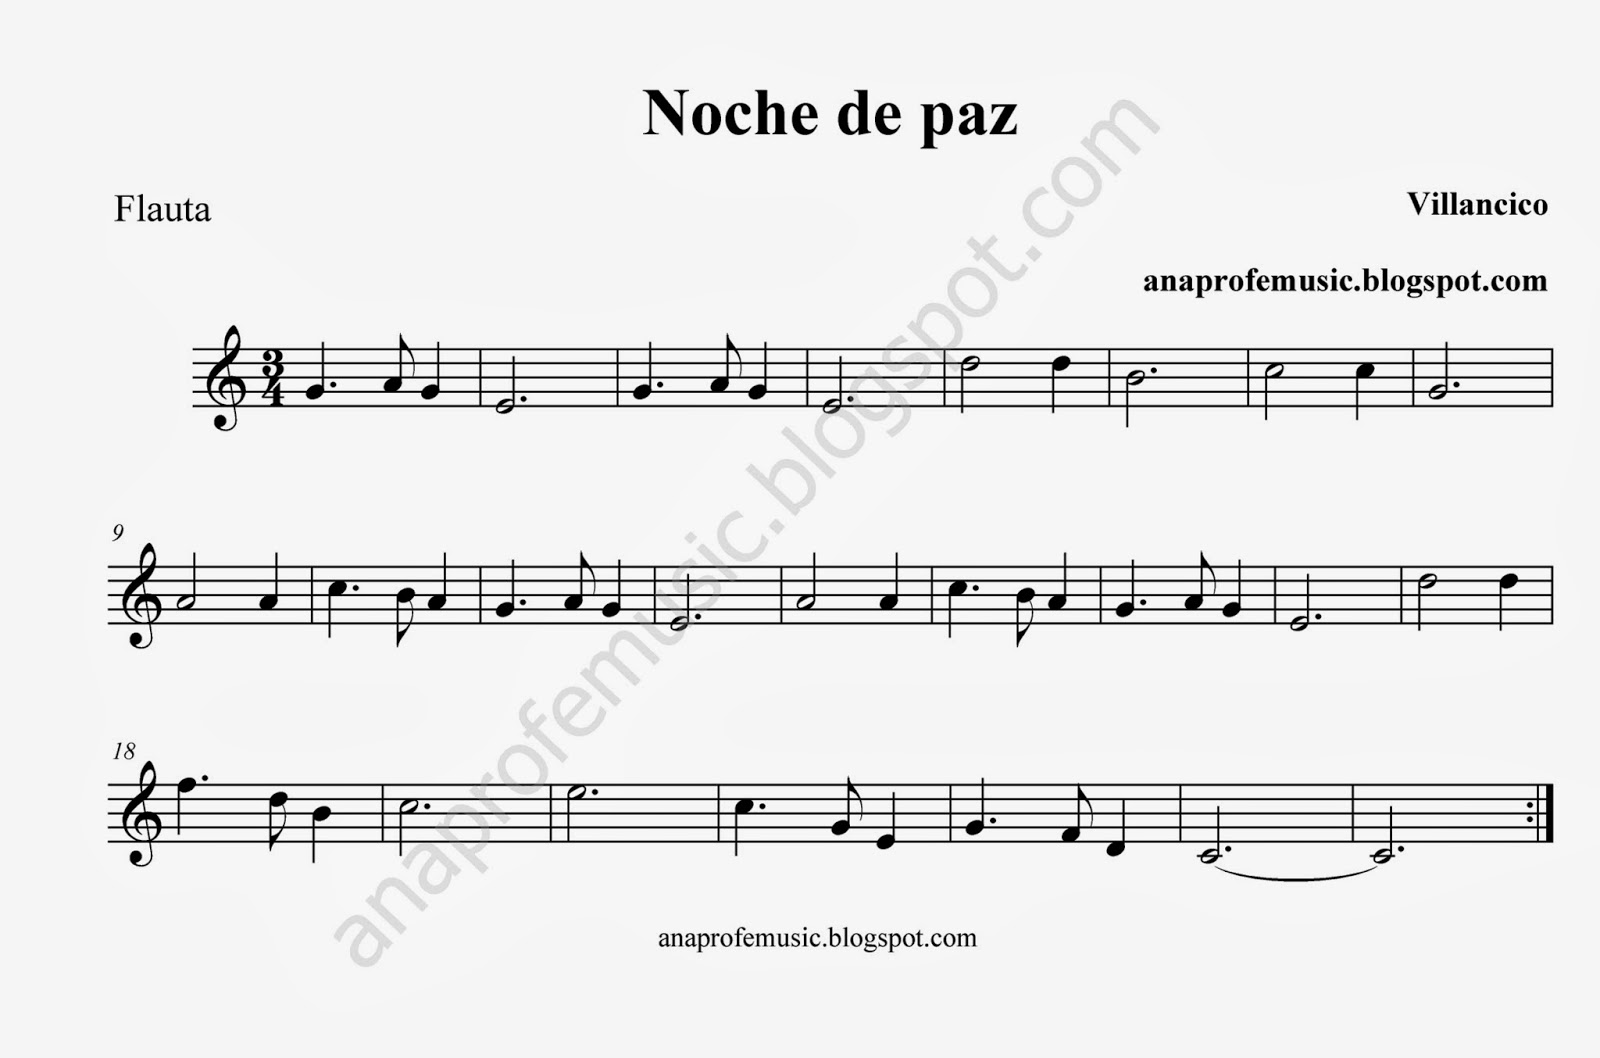 Chillido ramo de flores tubo AnaProfeMusic: Partitura Villancico Noche de Paz - Silent Night Sheet Music